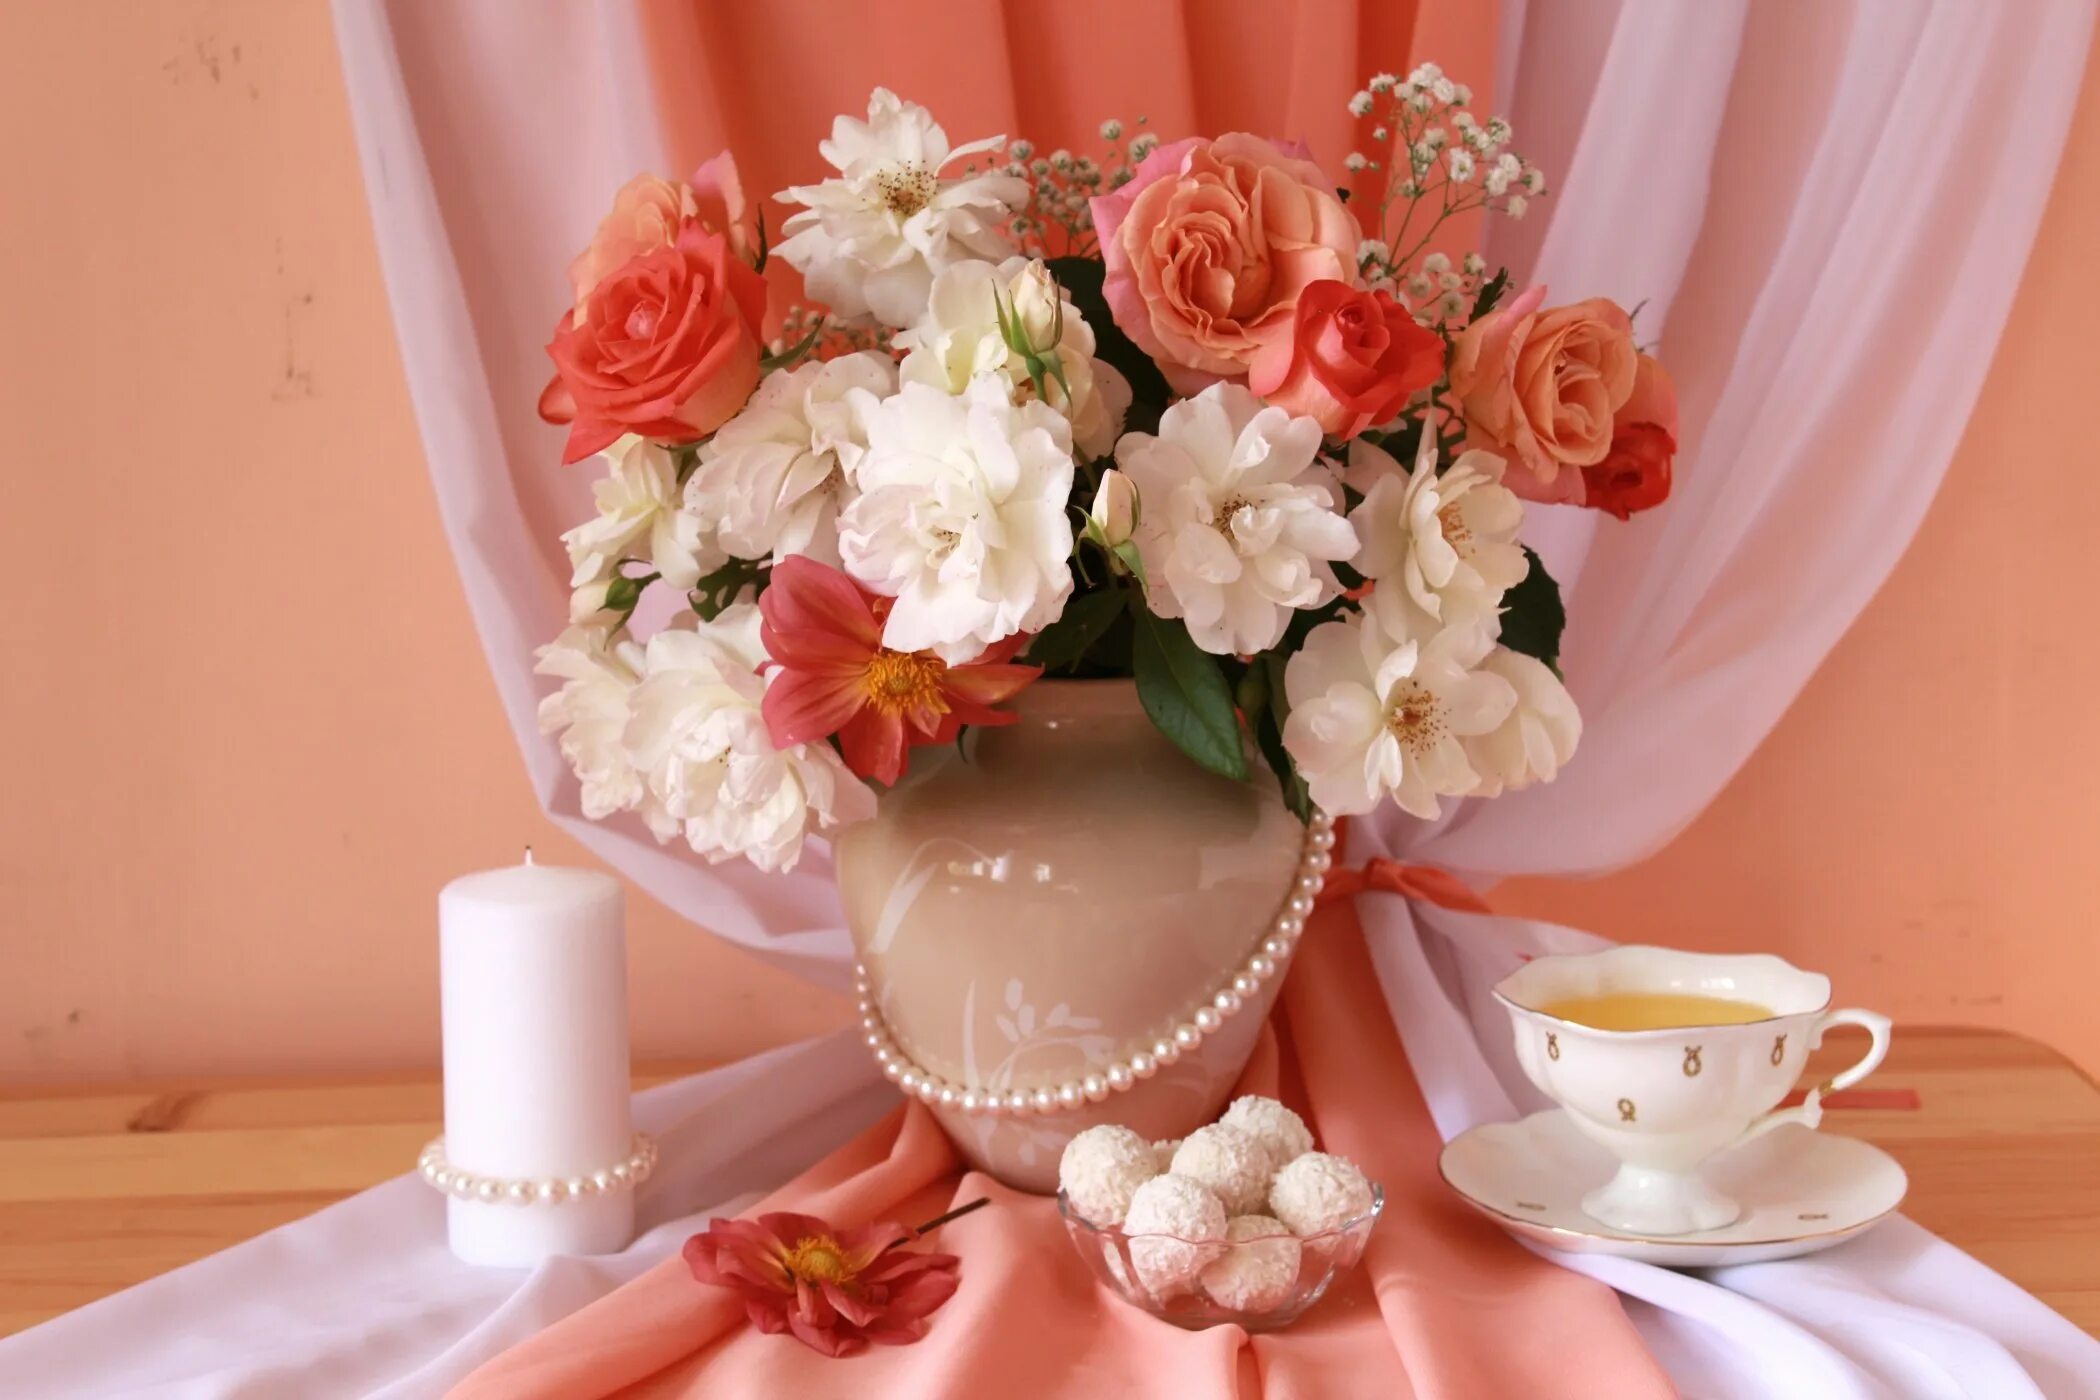 Букеты утро. Цветы в вазе. Розы в вазе. Натюрморт в розовых тонах. Цветы на столе.